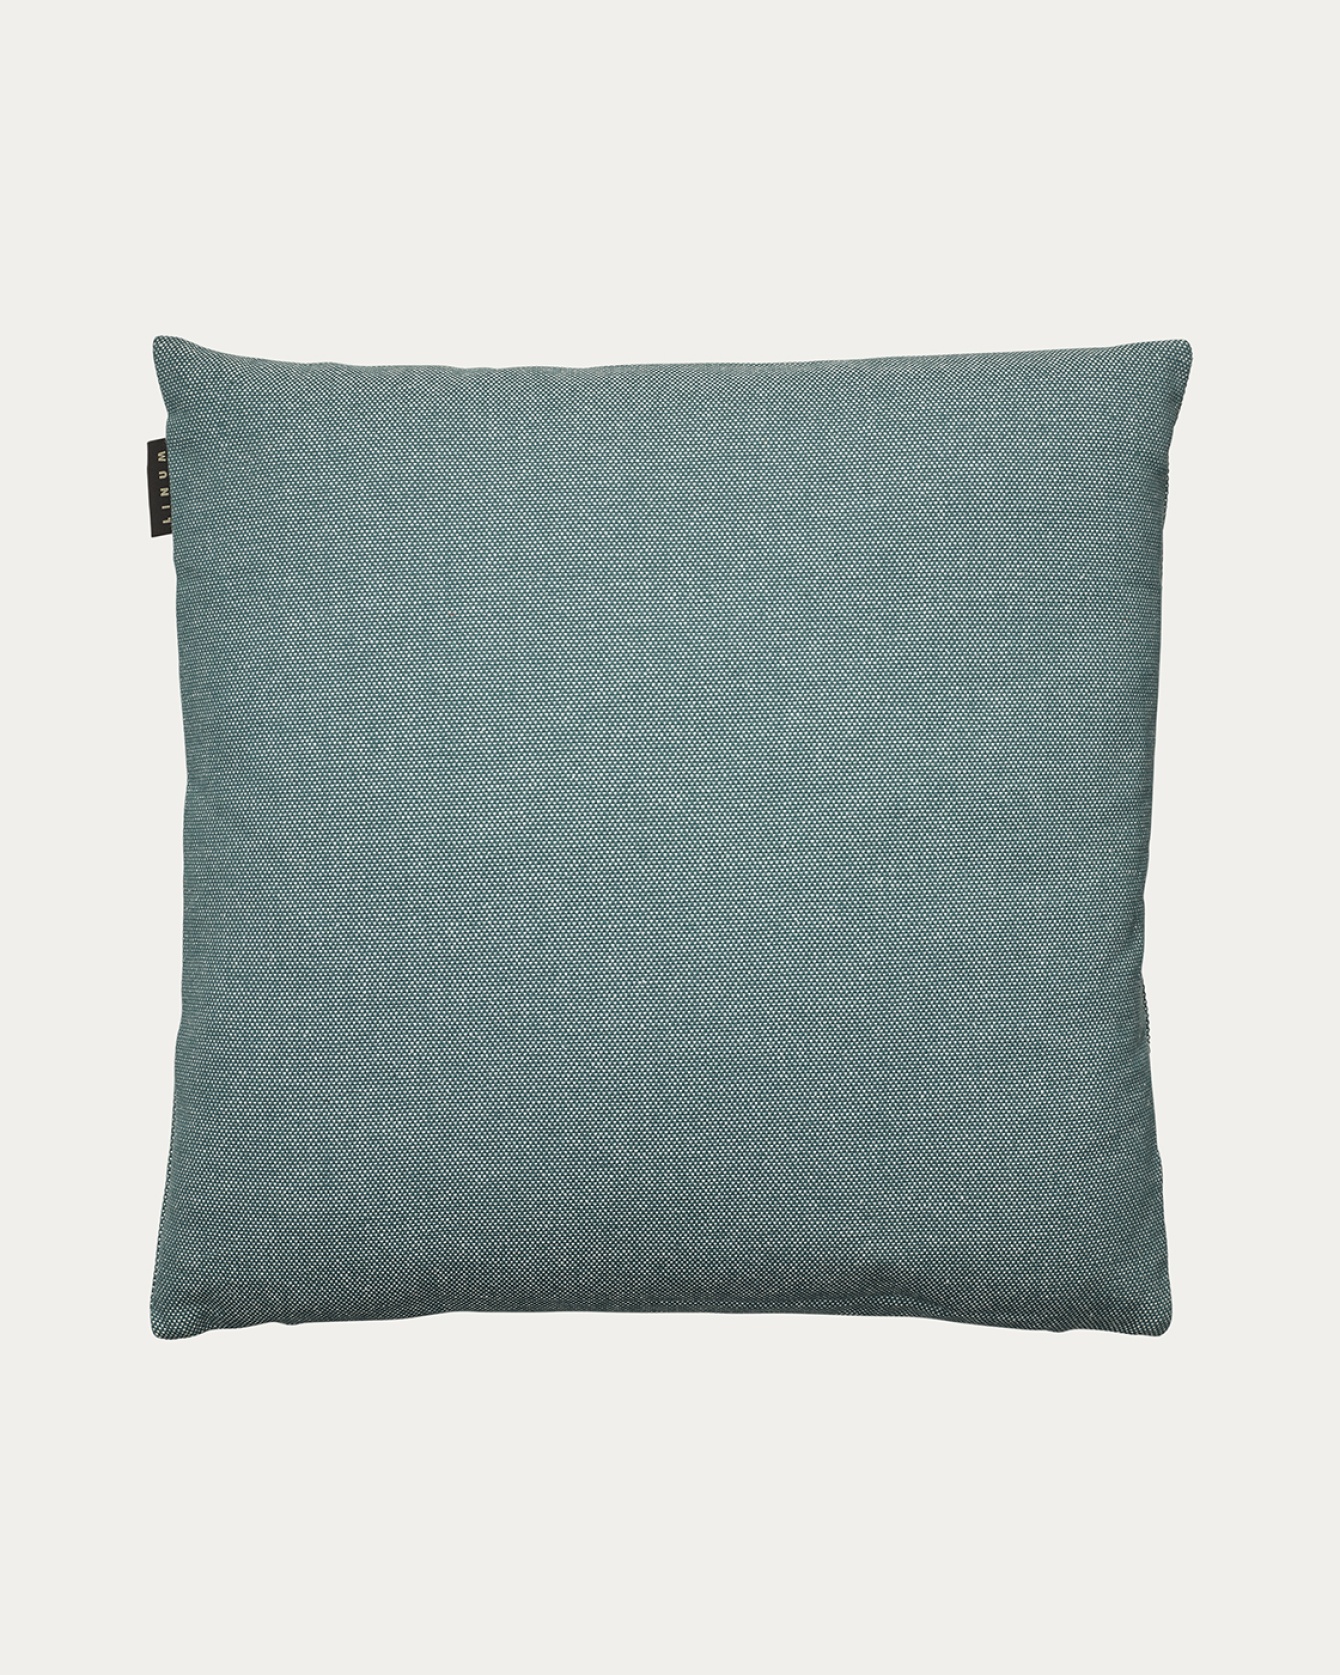 Image du produit housse de coussin PEPPER gris foncé turquoise en coton doux de LINUM DESIGN. Facile à laver et durable pendant des générations. Taille 50 x 50 cm.